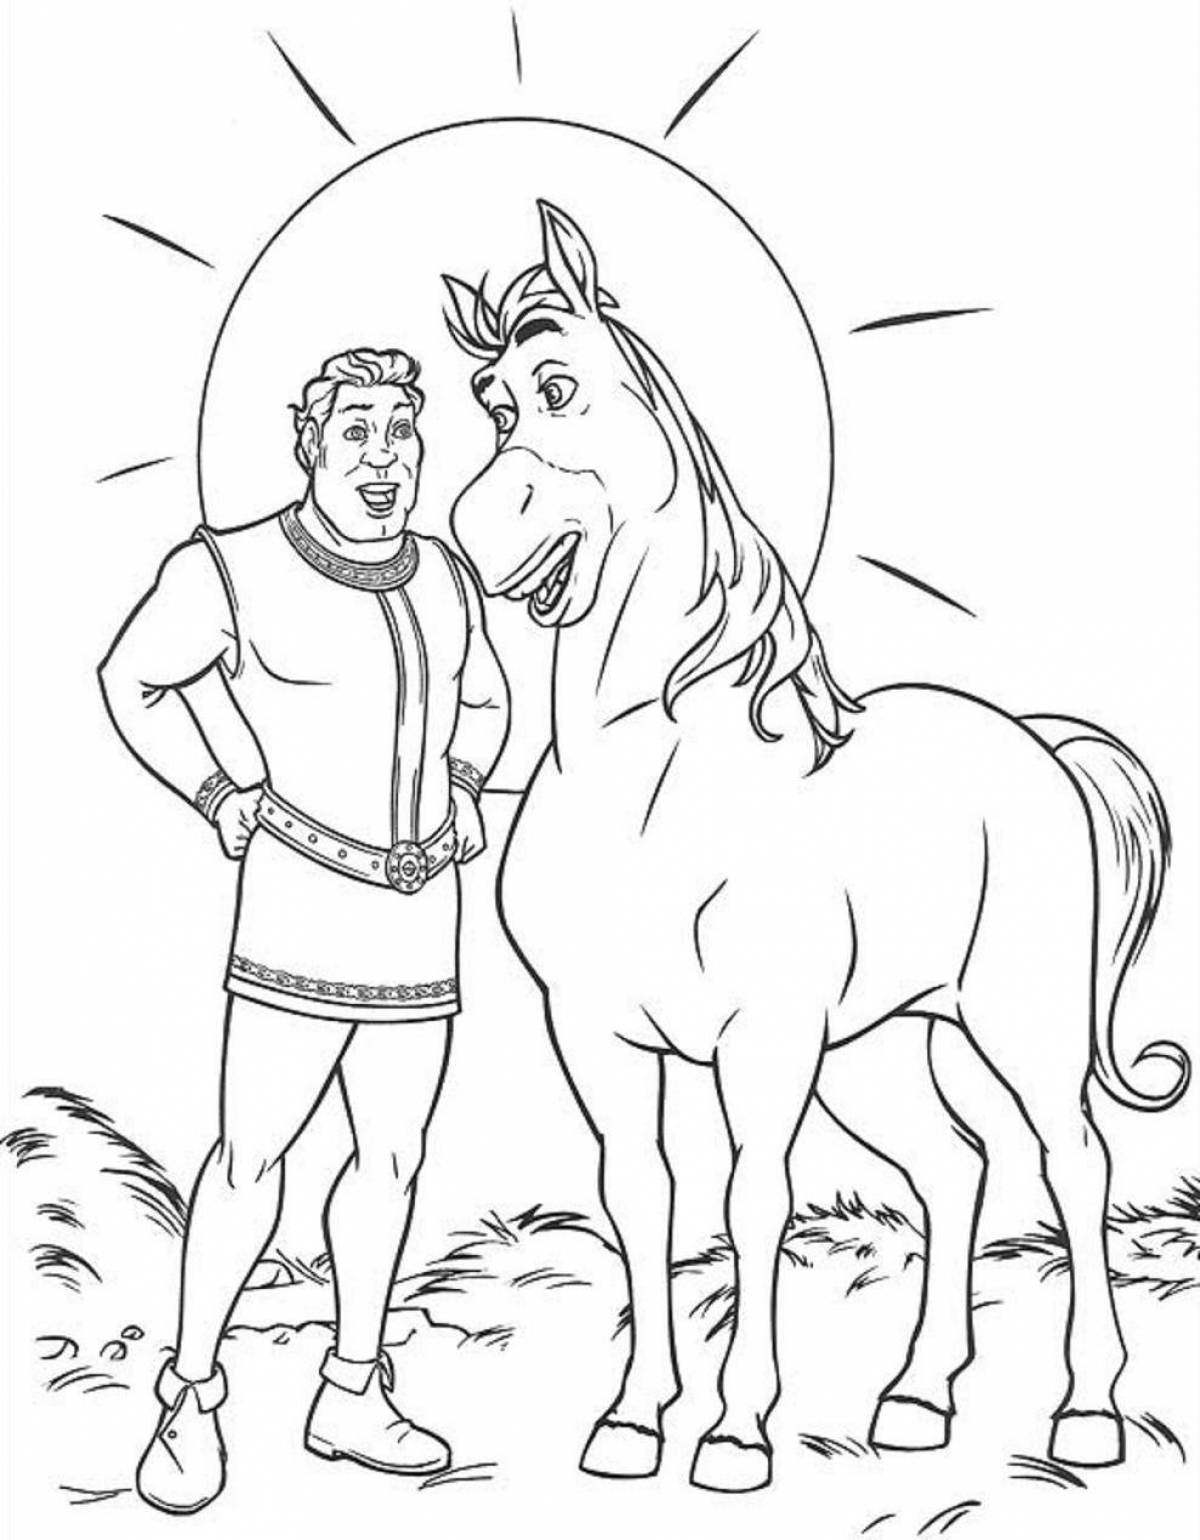 Герой раскраски exalted верхом на лошади